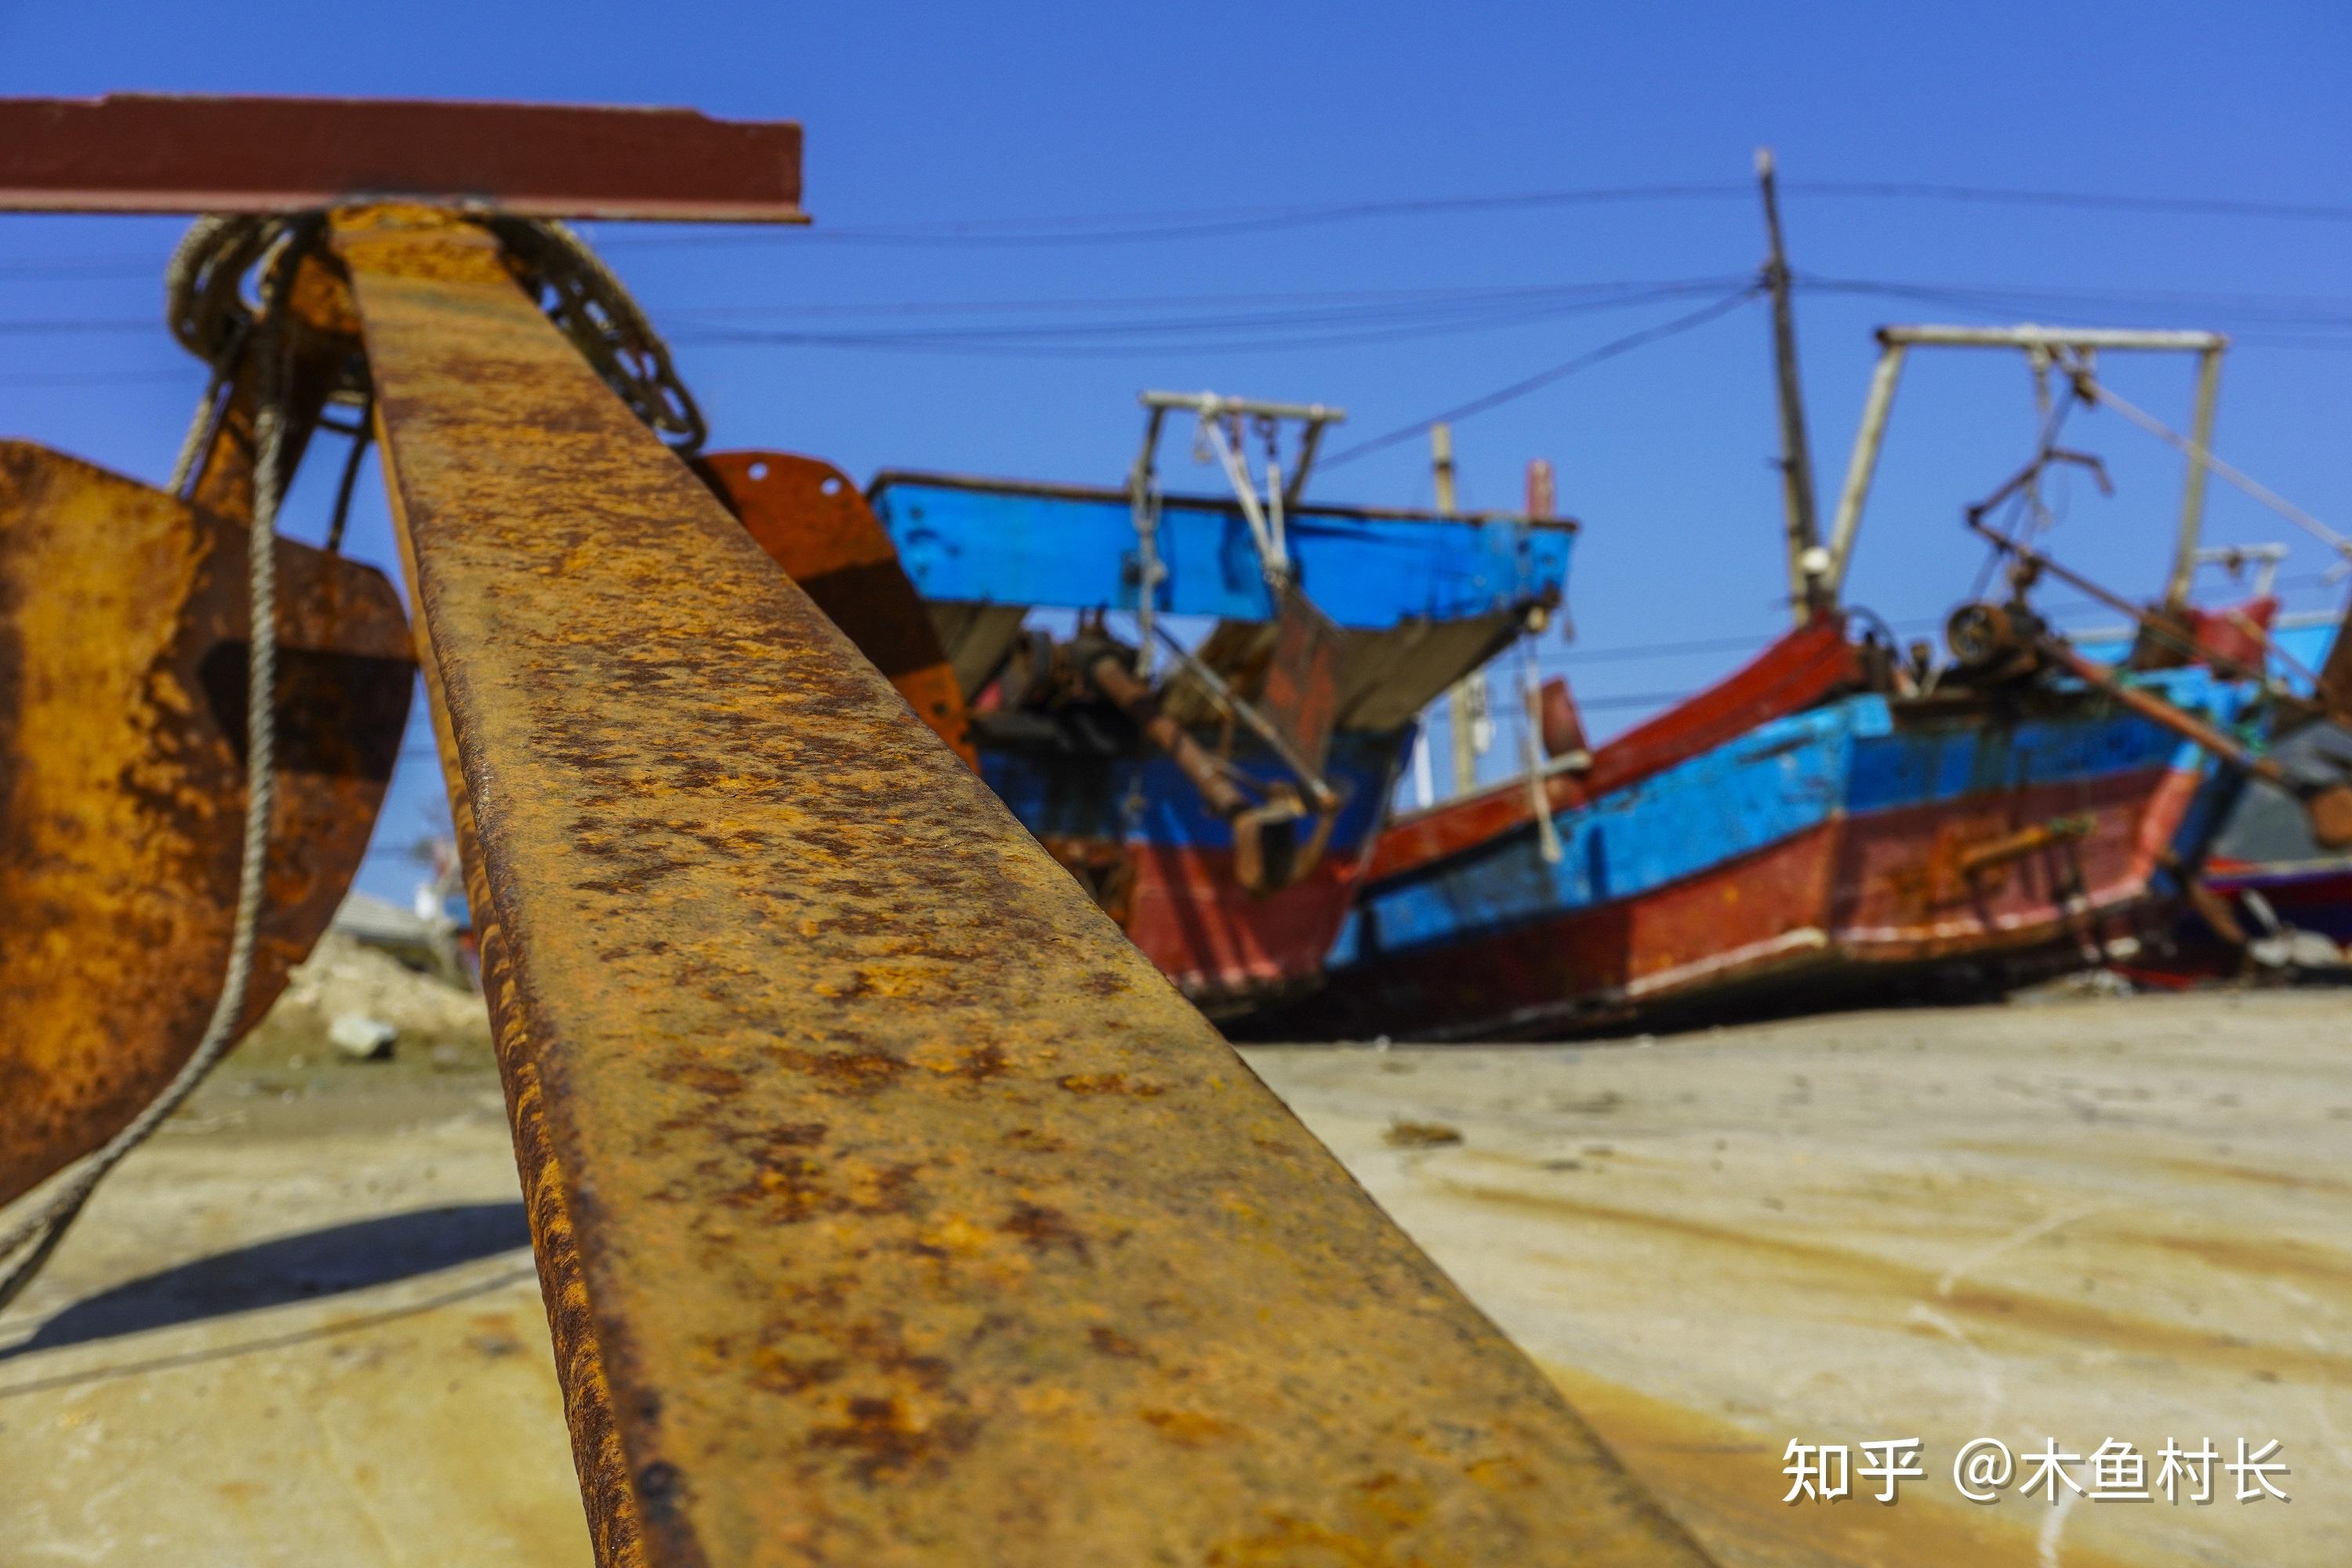 福州连江的一个千年小渔村，据说全国只有1%的人领略过它的美